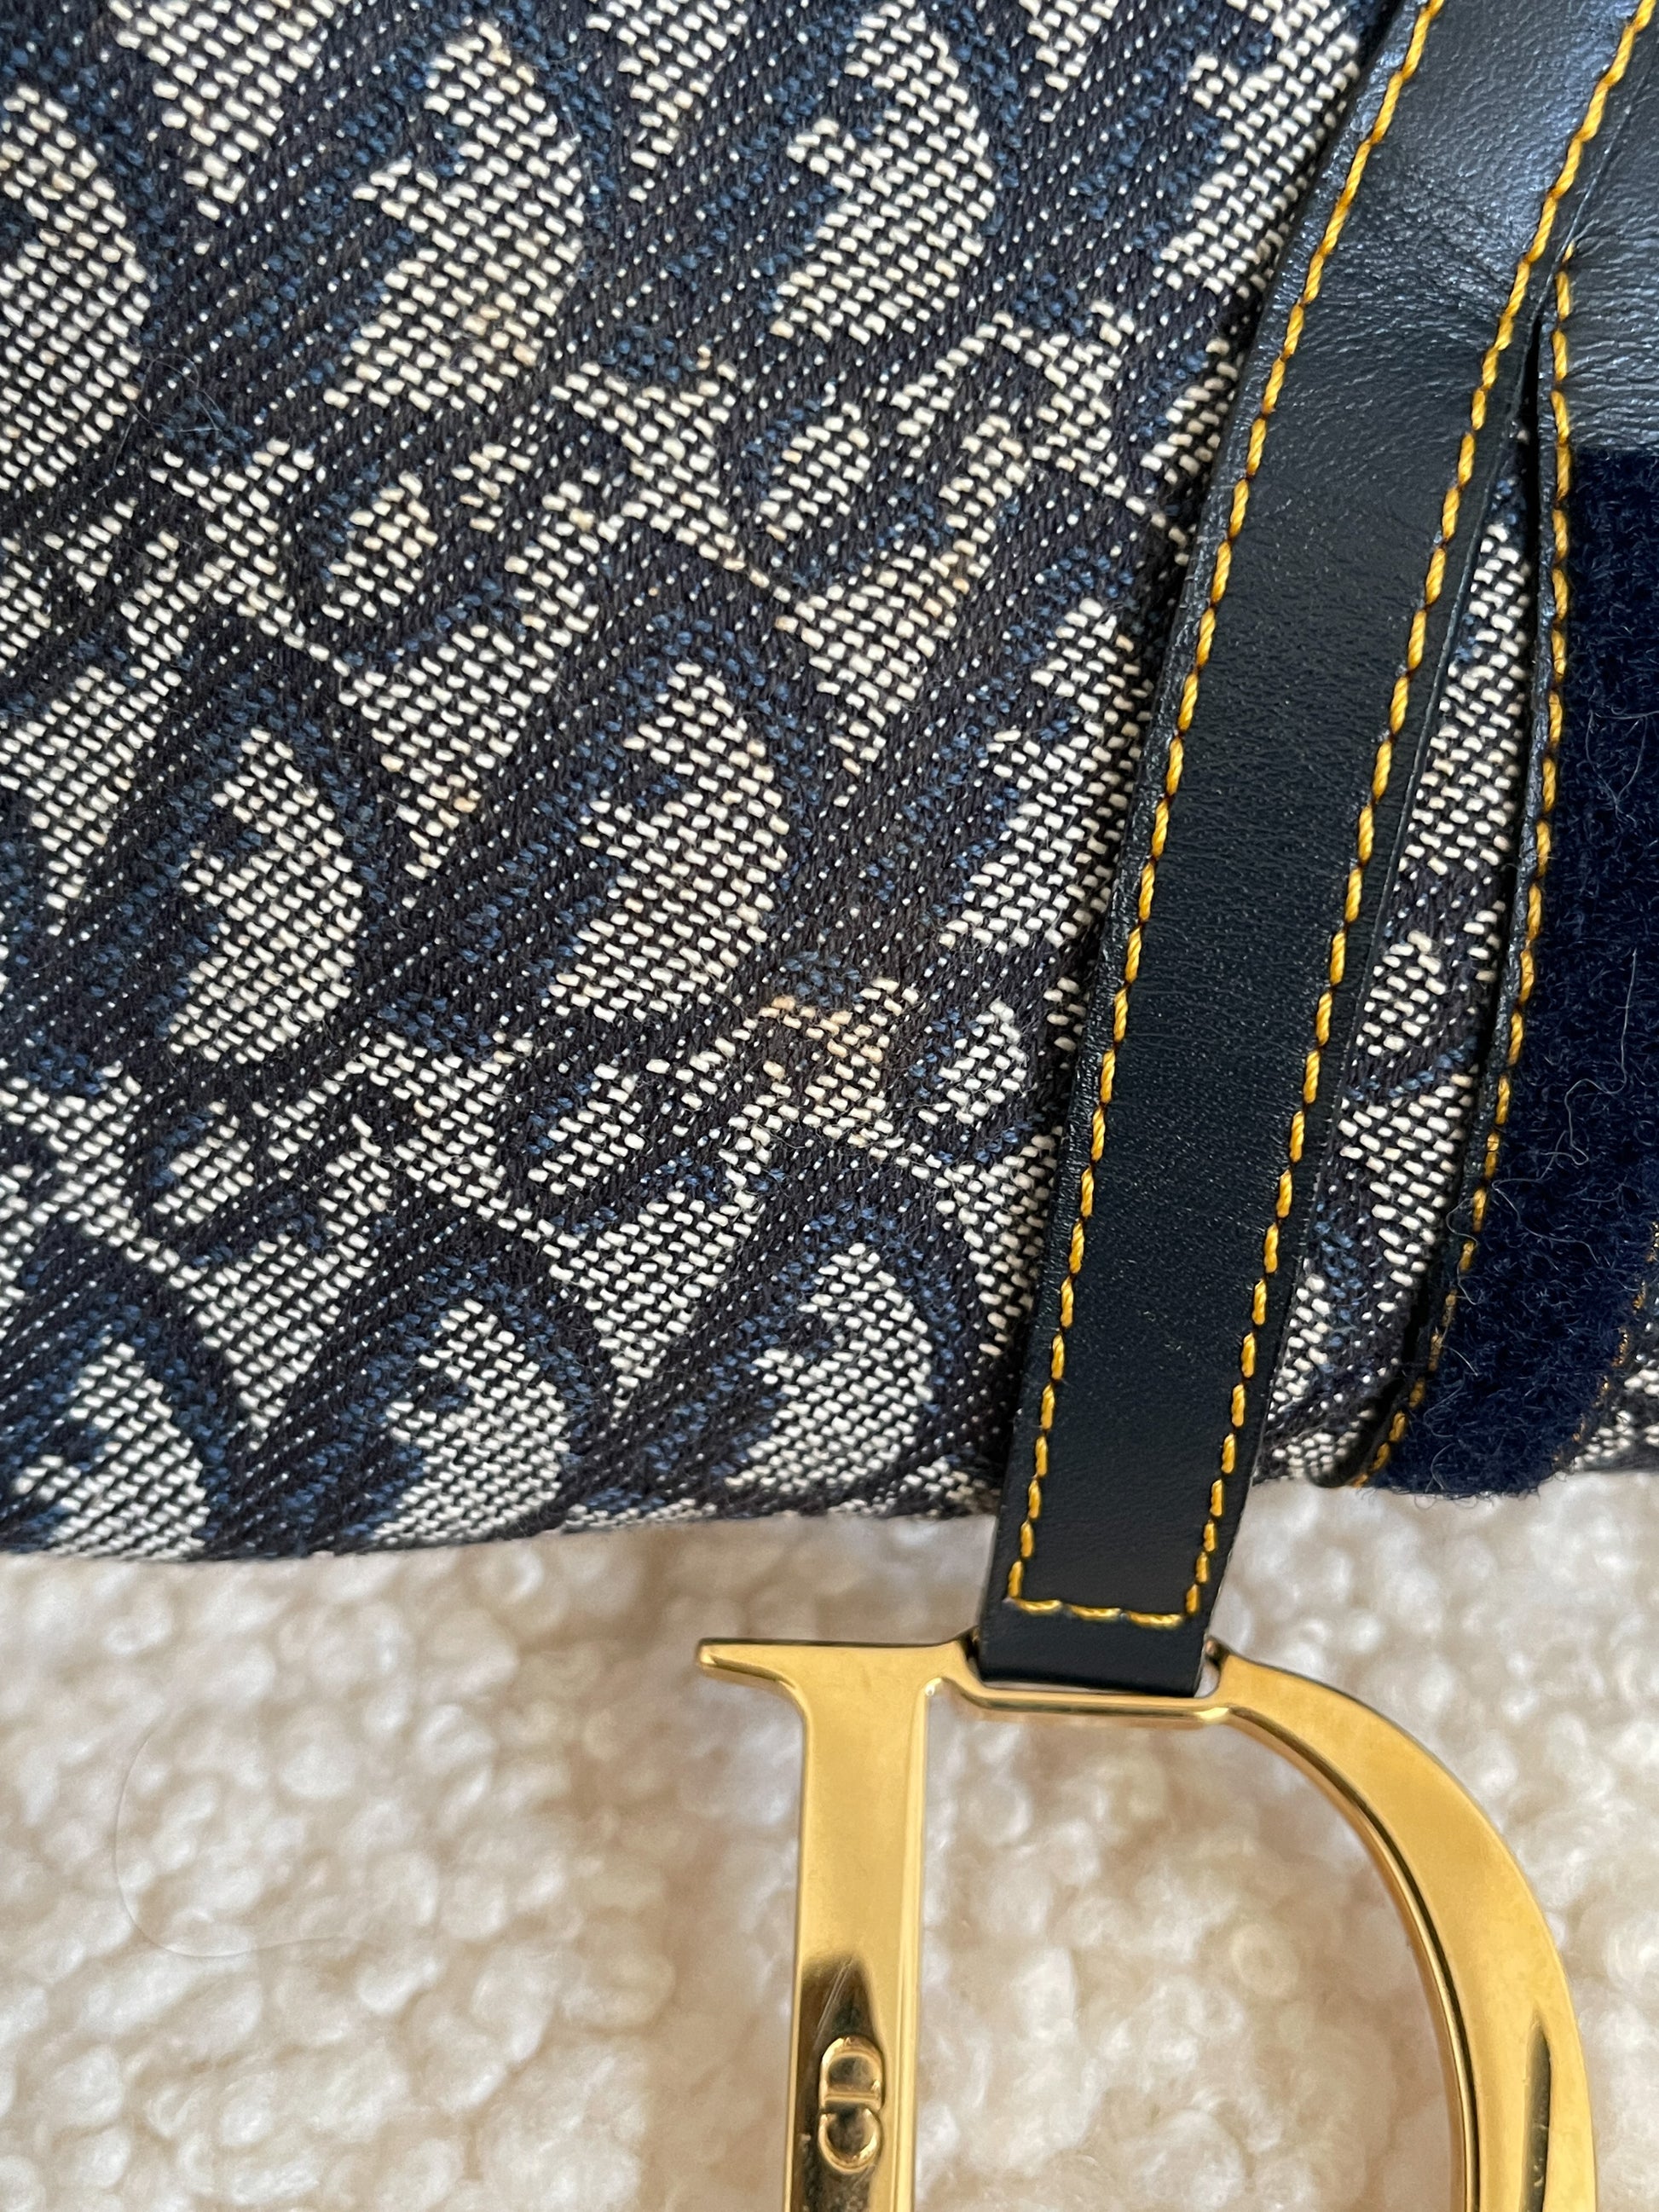 Pick your fave: Dior Pochette or Dior Saddle bag? 👀 #vintagedior